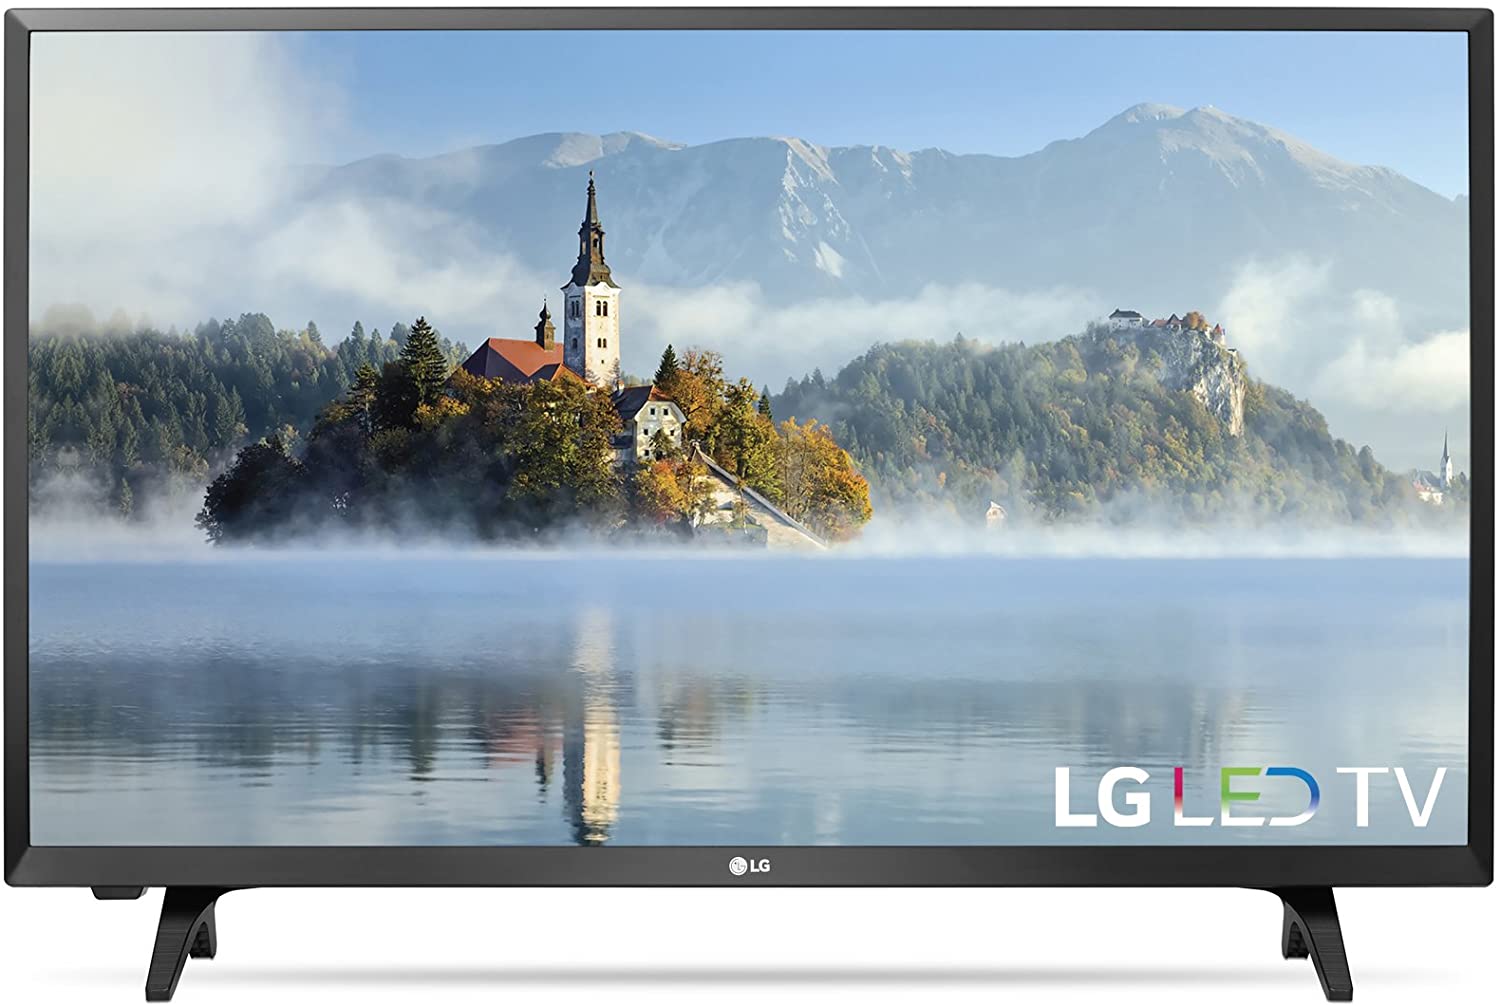 LG 32LJ500B 720p HD LED TV, 32-Inch